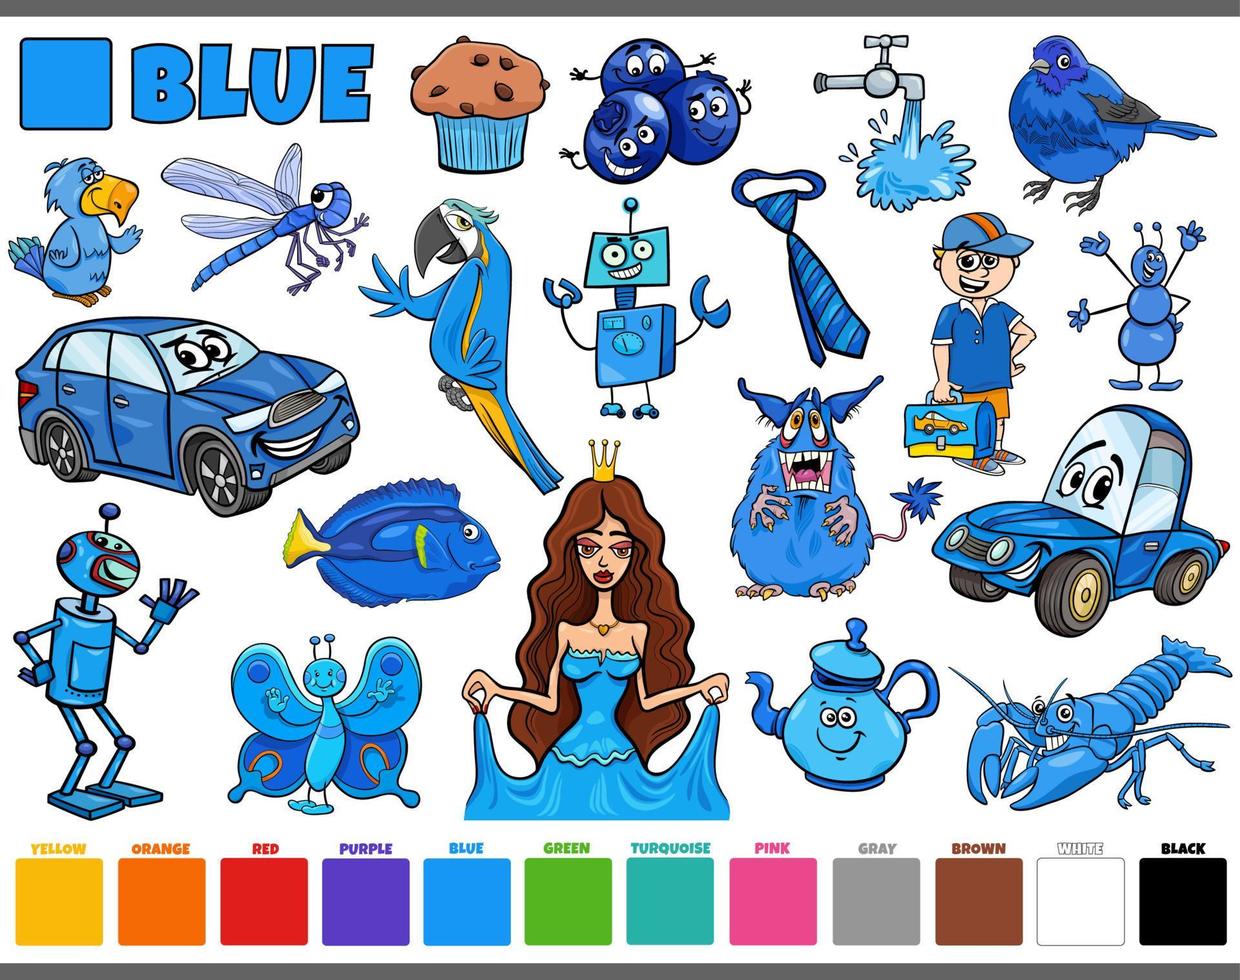 Baixe Personagem de desenho animado adorável com cores azul e roxo